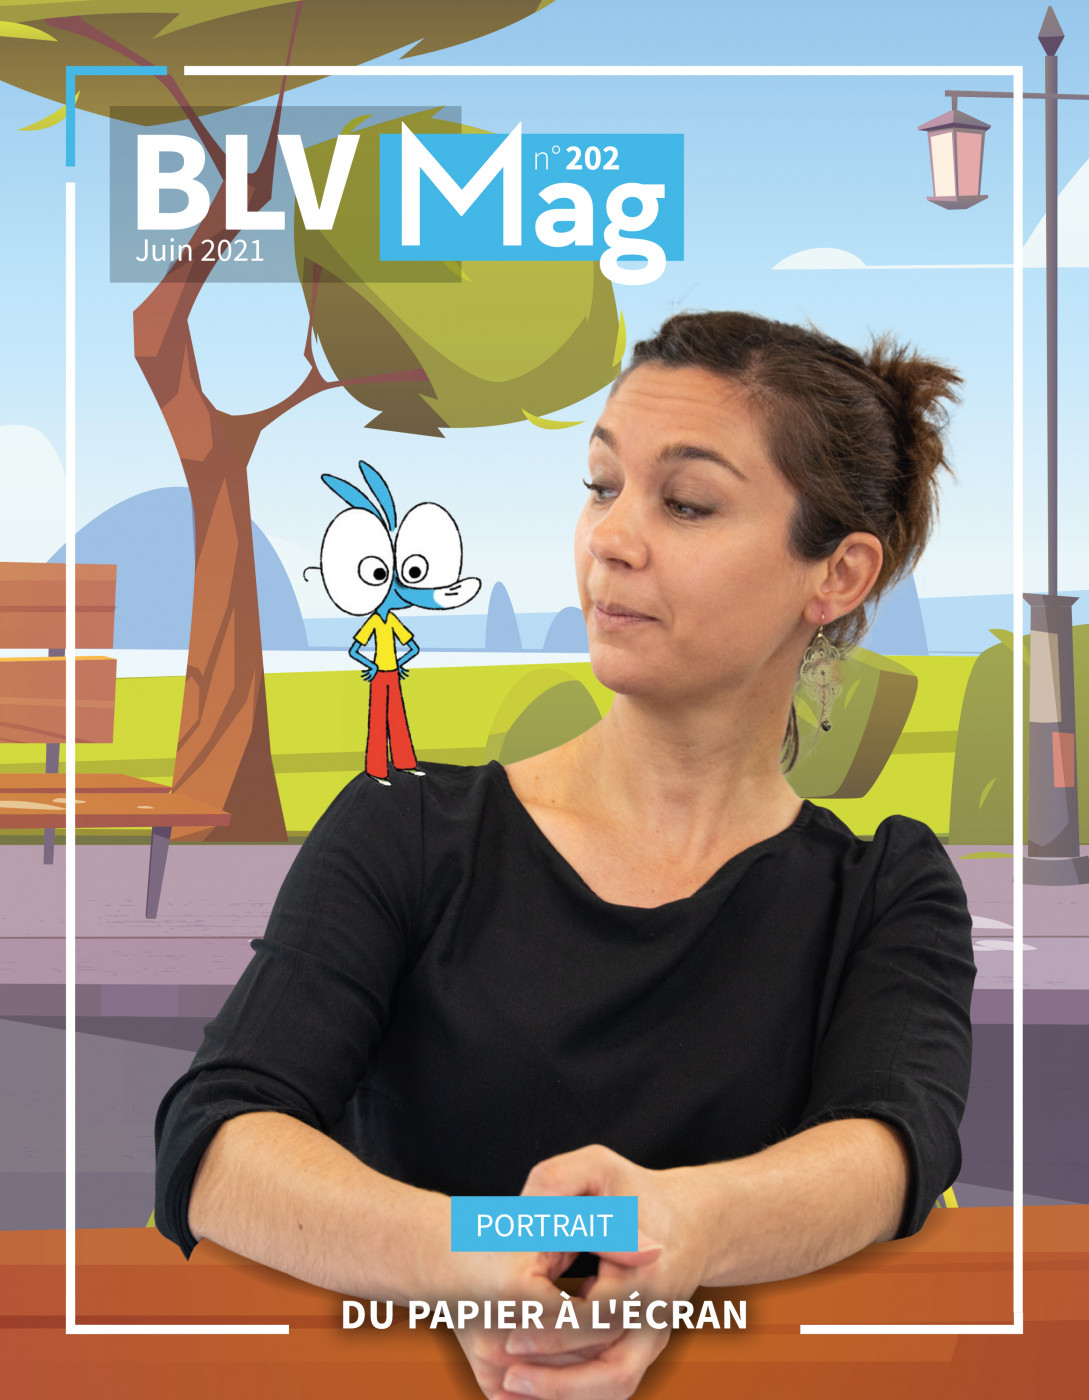 BLV Mag n°202 – Juin 2021